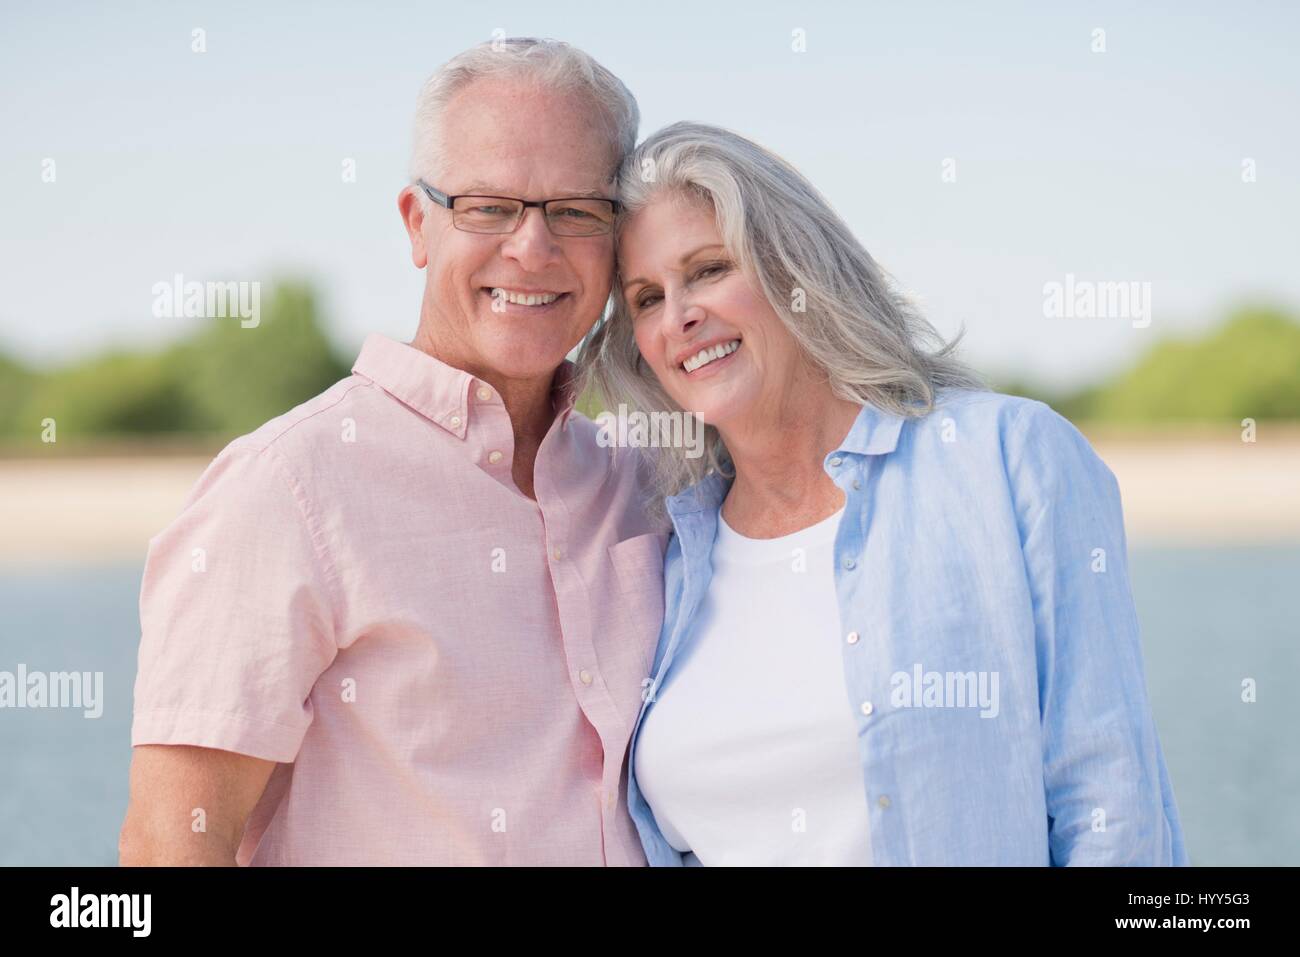 Senior couple smiling outdoors. Stock Photo